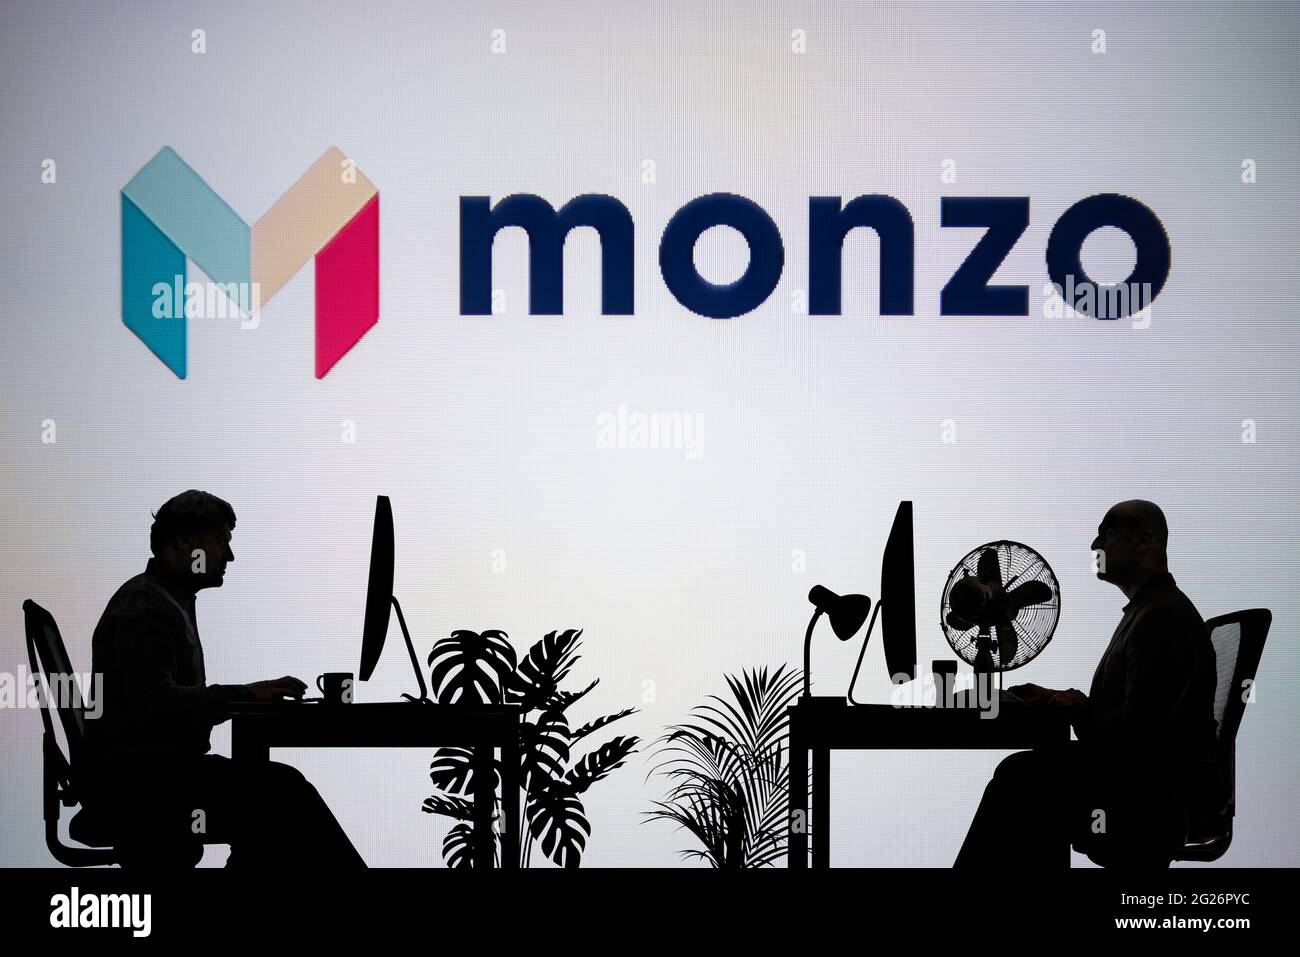 El logotipo del banco Monzo se ve en una pantalla LED de fondo, mientras que dos personas con siluetas trabajan en un entorno de oficina (sólo para uso editorial) Foto de stock